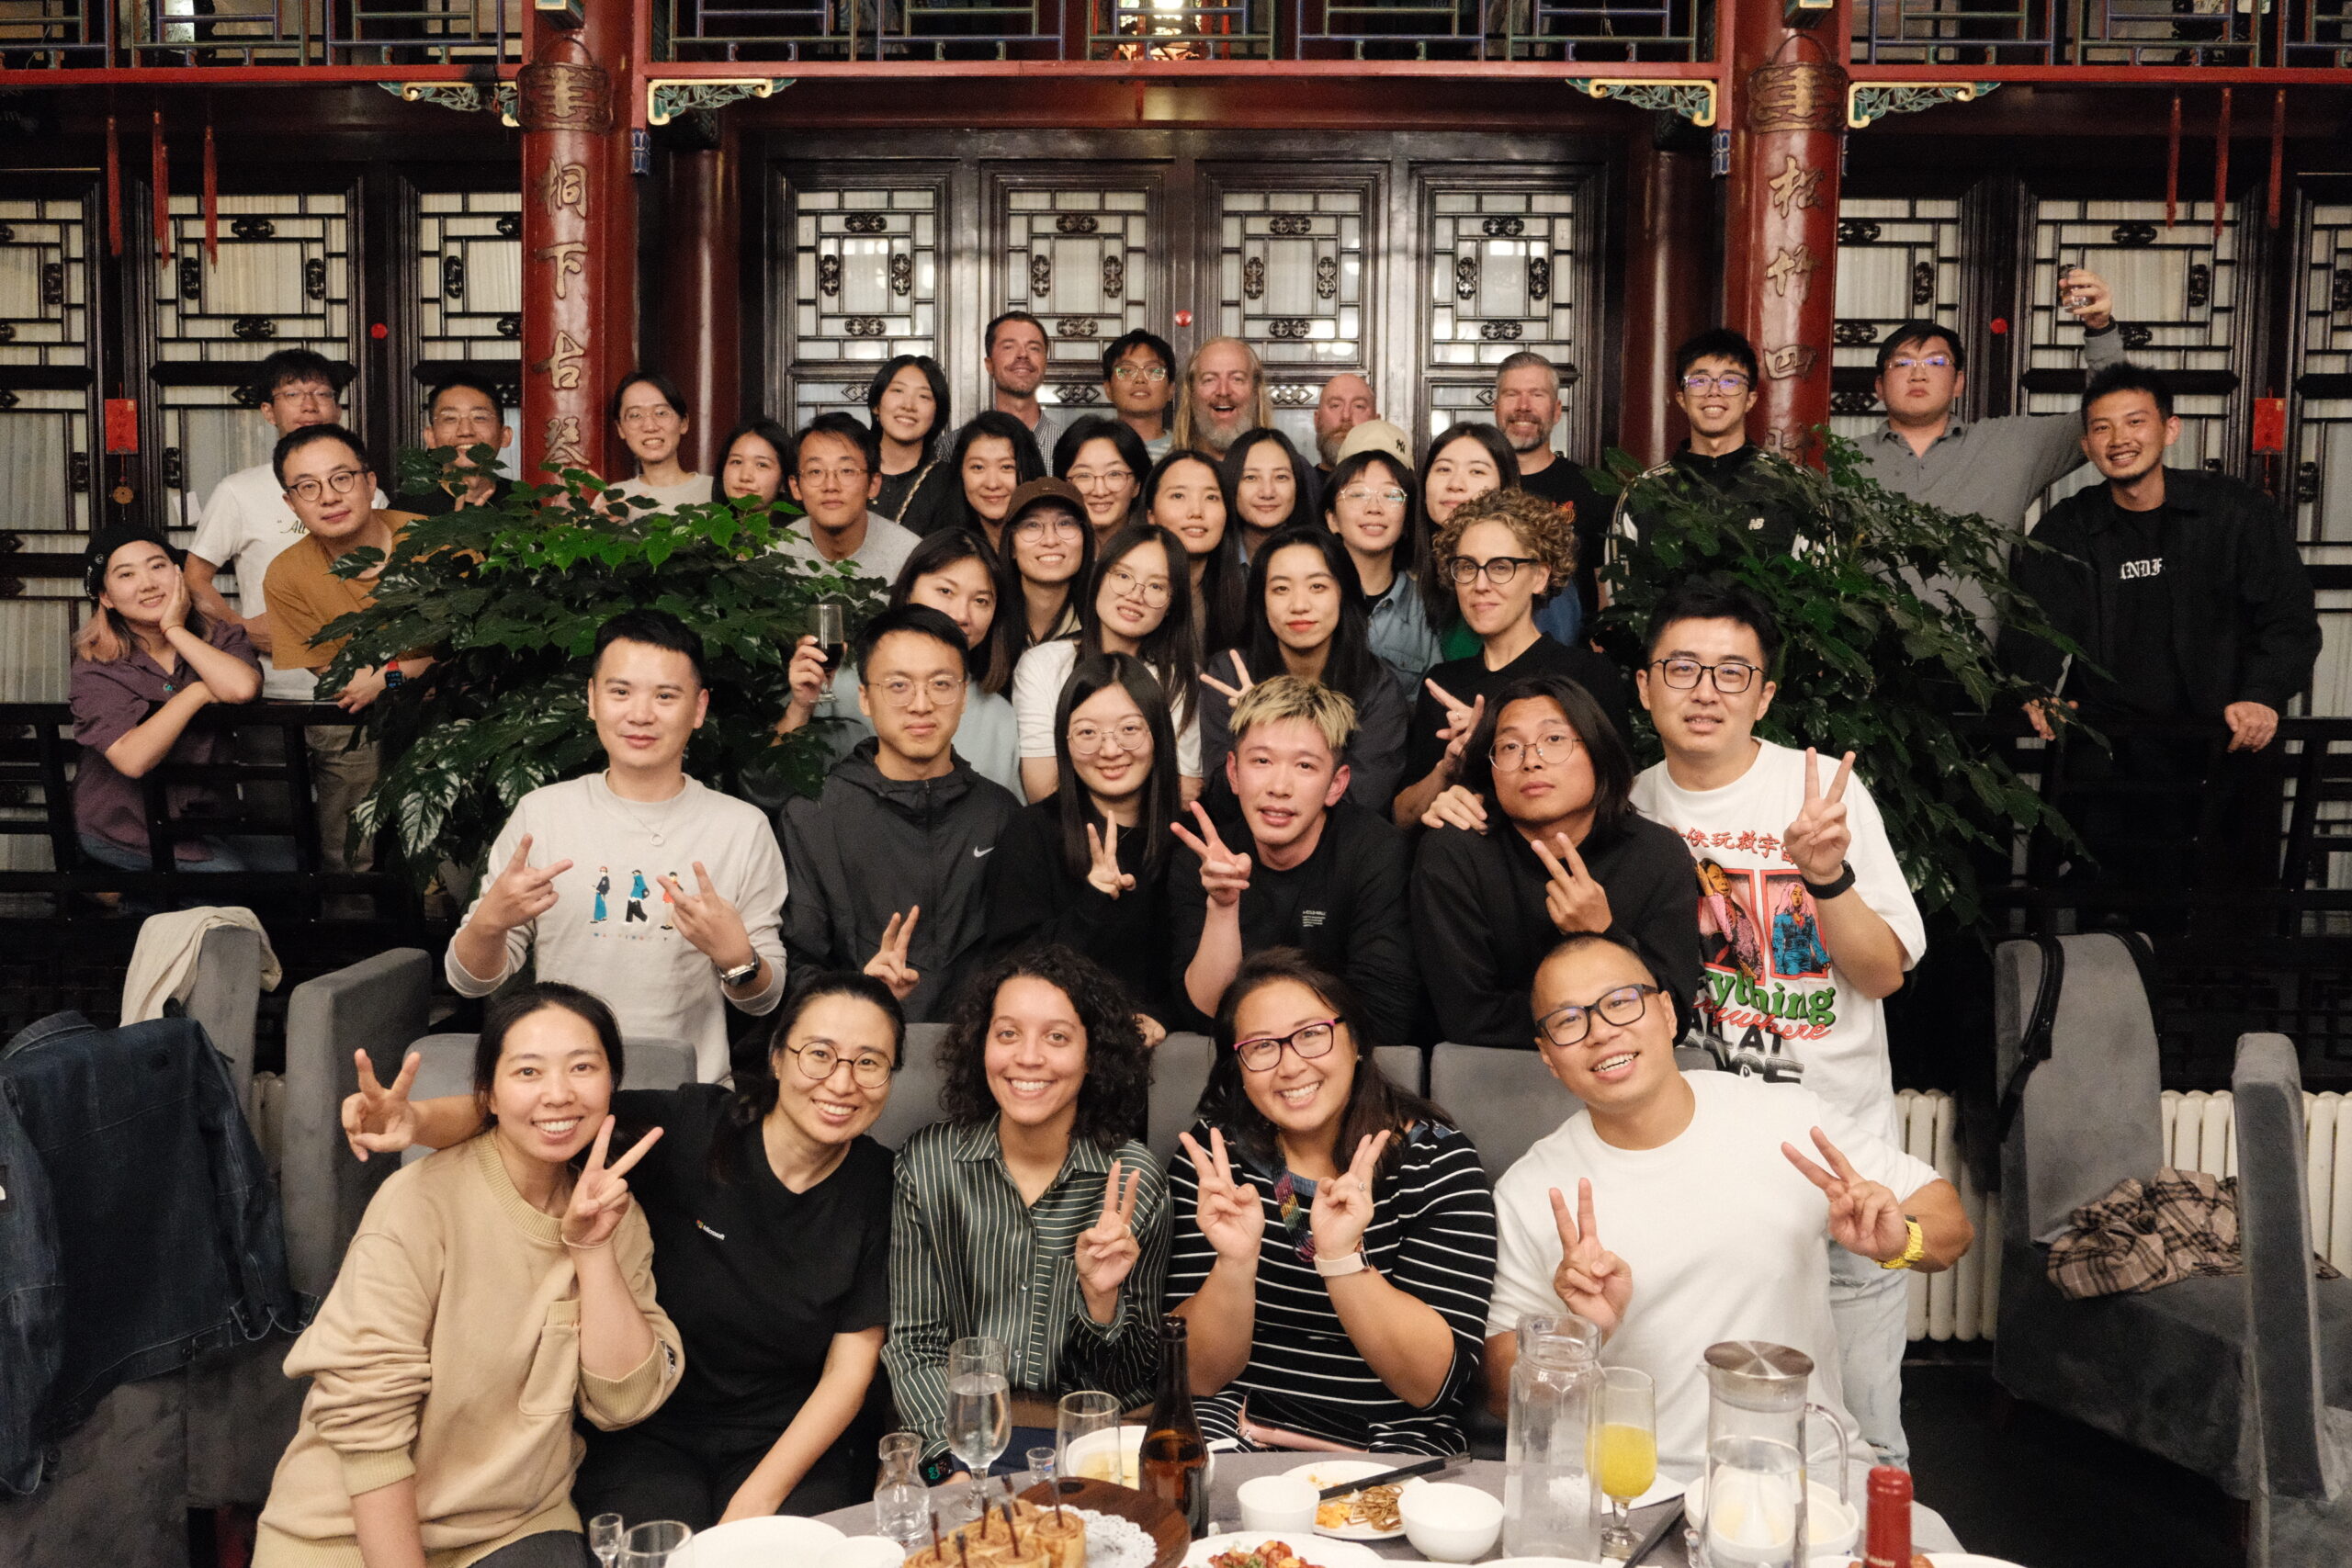 Our deisgn team in Beijing